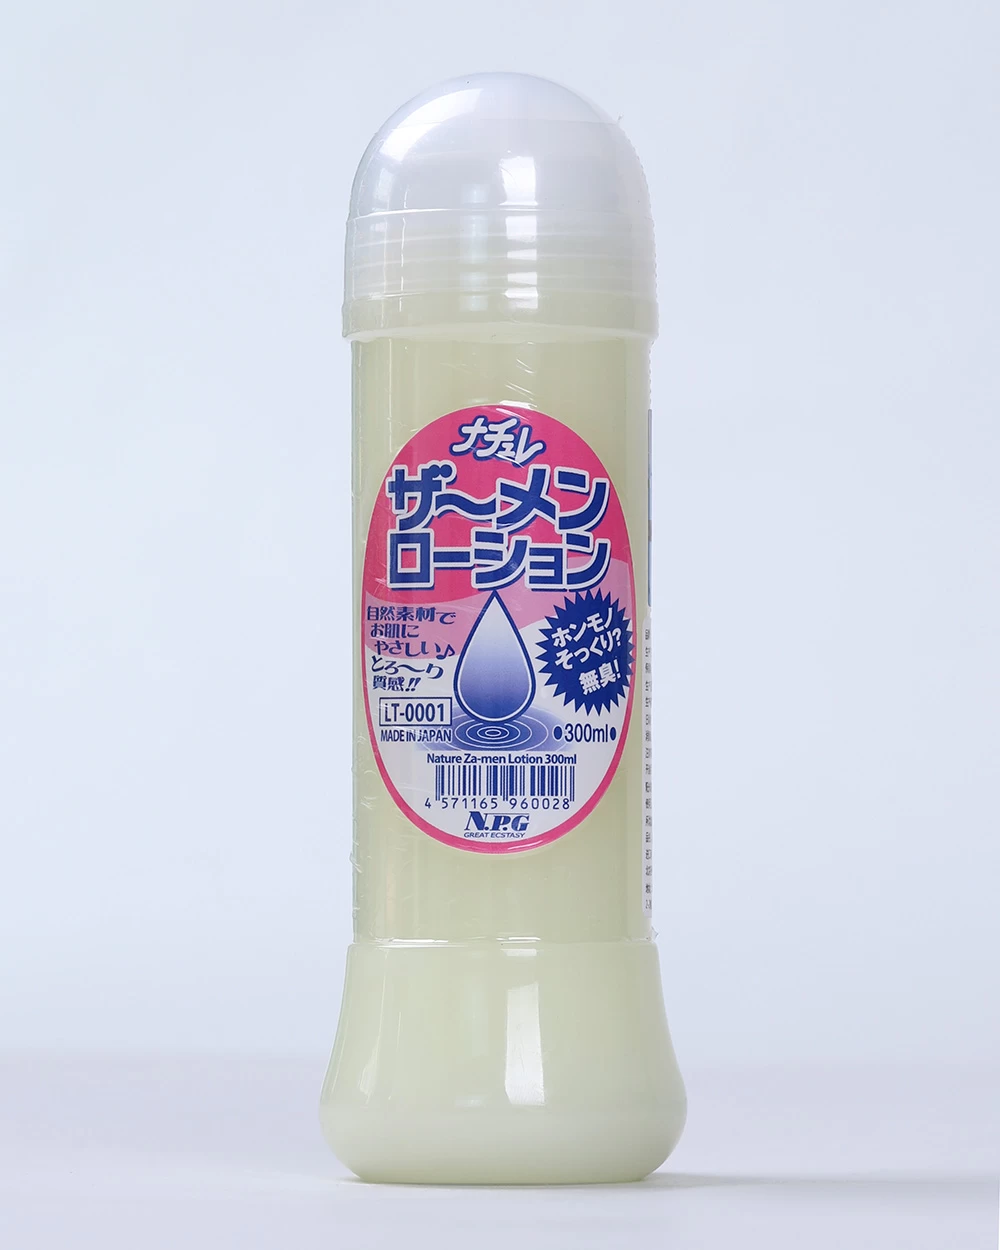  Shop bán Gel bôi trơn massage dạng tinh dịch cao cấp NPG Nature Za-men Lotion Made in Japan giá sỉ